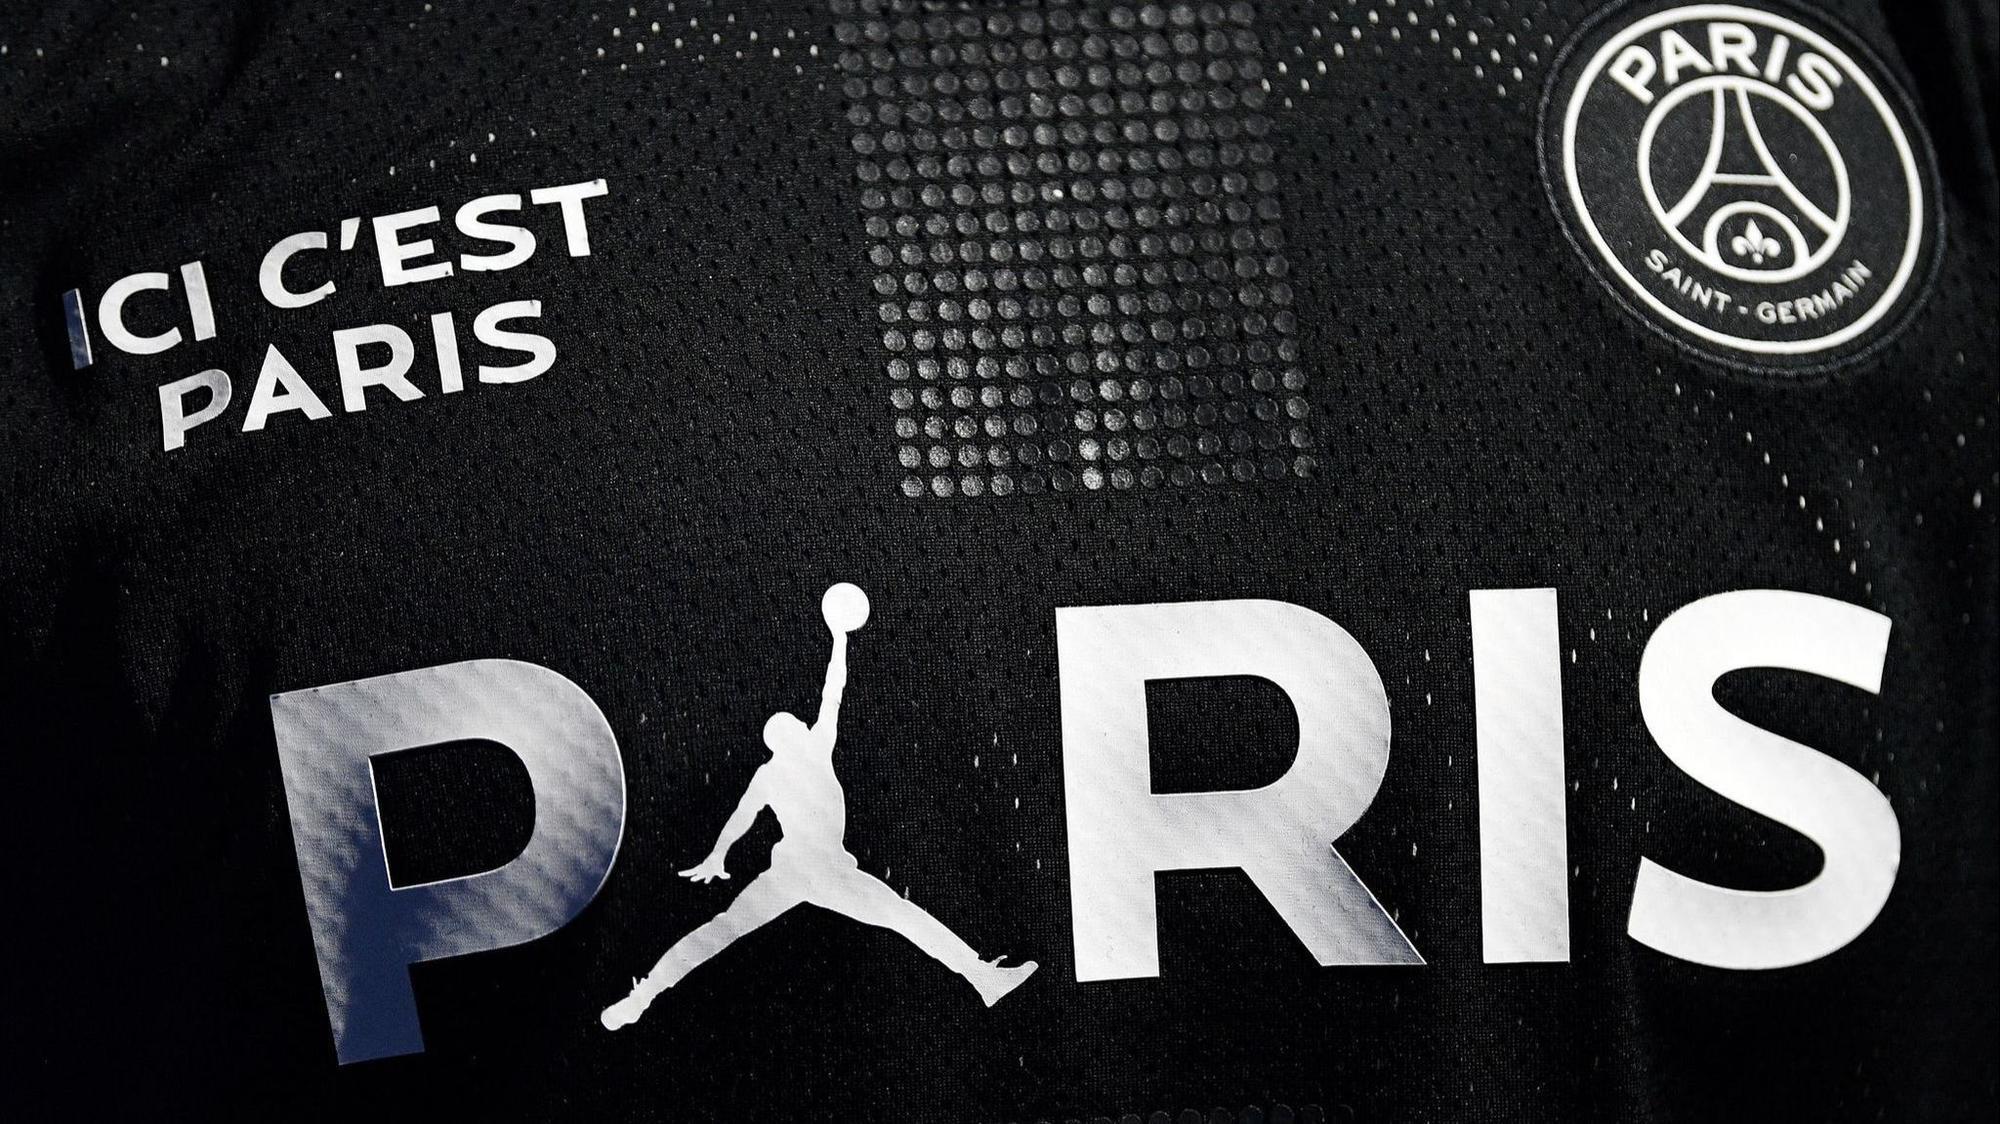 El PSG firma un acuerdo con la marca Jordan - Hoy Chicago